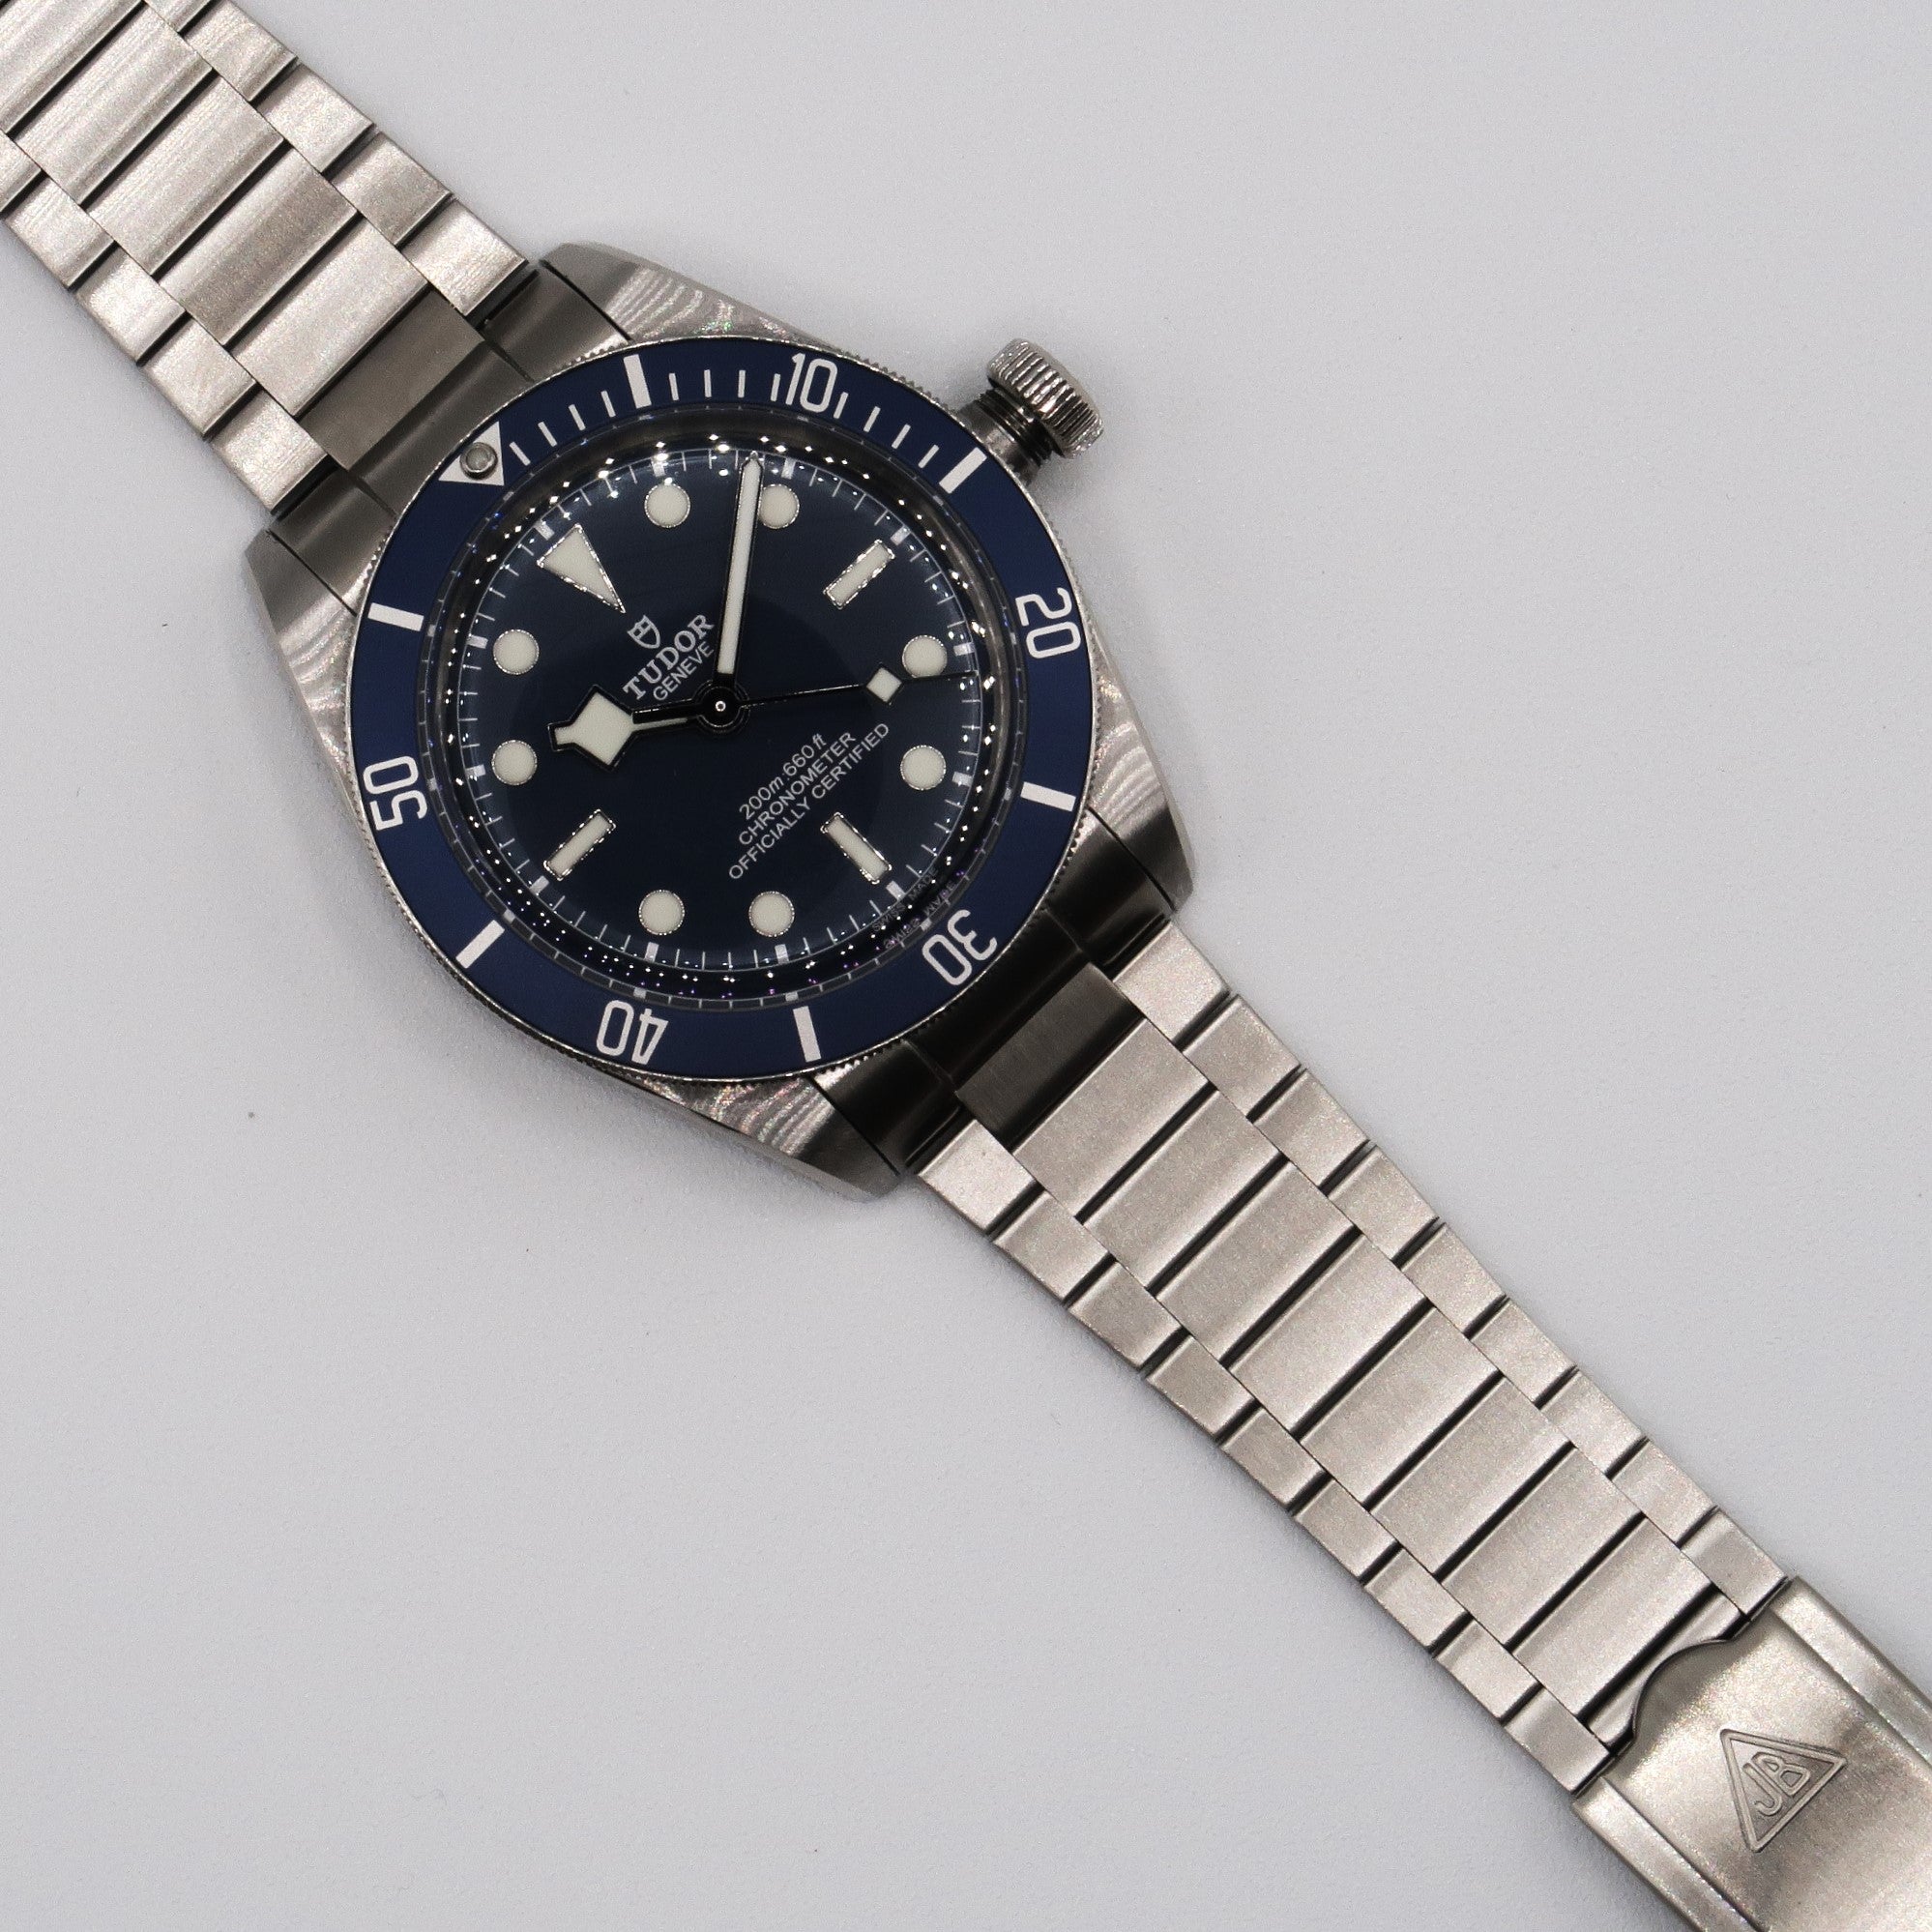 Forstner Model J Stainless Steel Watch Bracelet for TUDOR Black